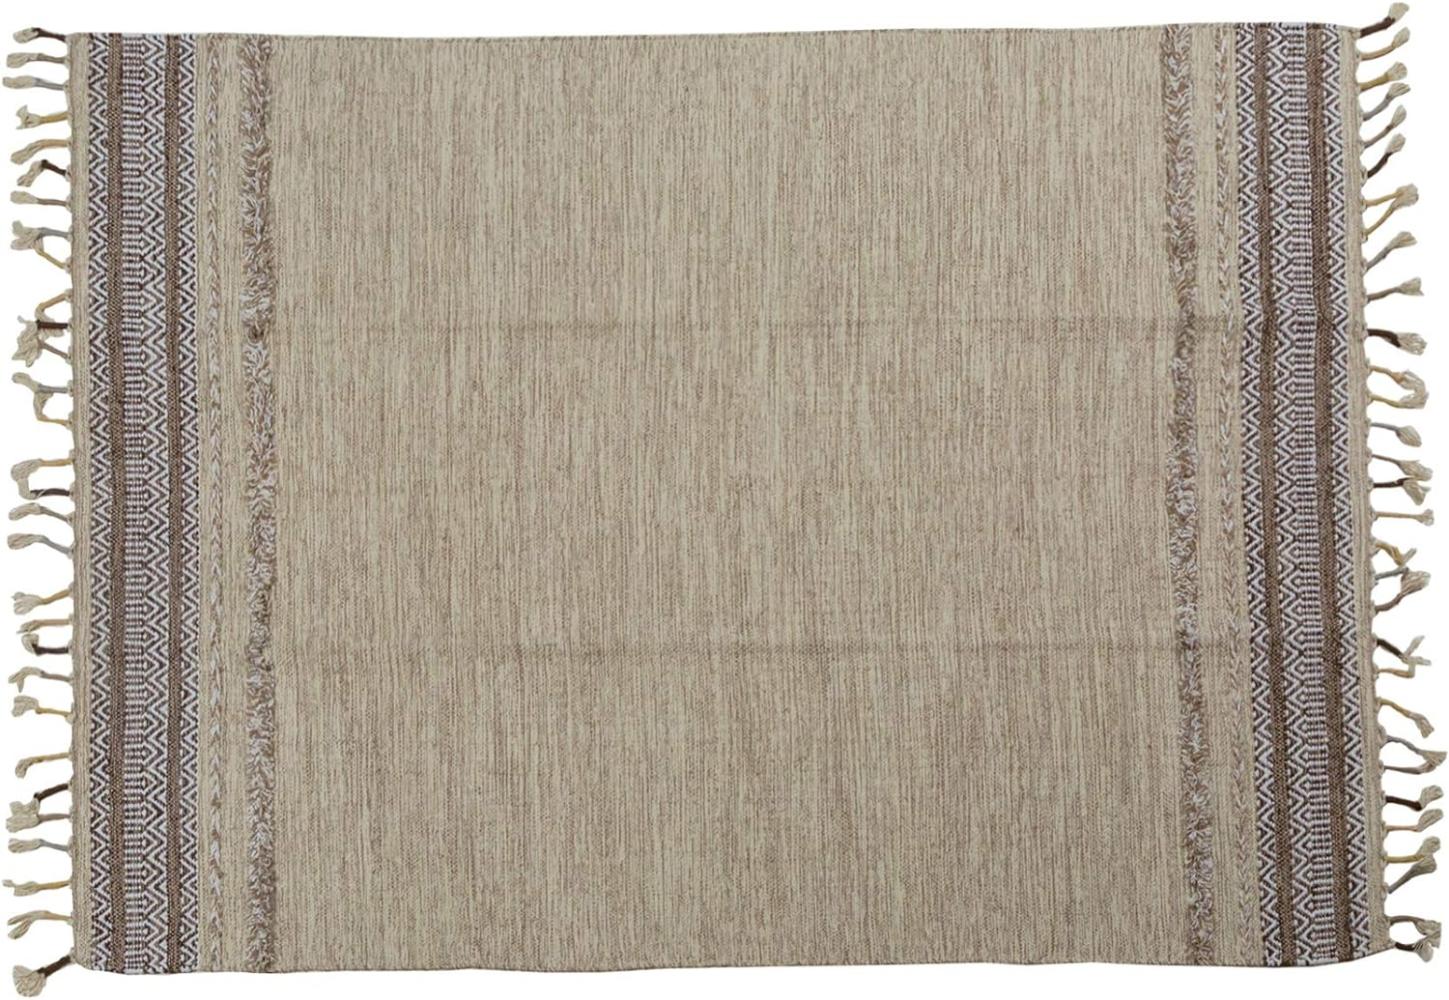 Dmora Moderner Boston-Teppich, Kelim-Stil, 100% Baumwolle, beige, 170x110cm Bild 1